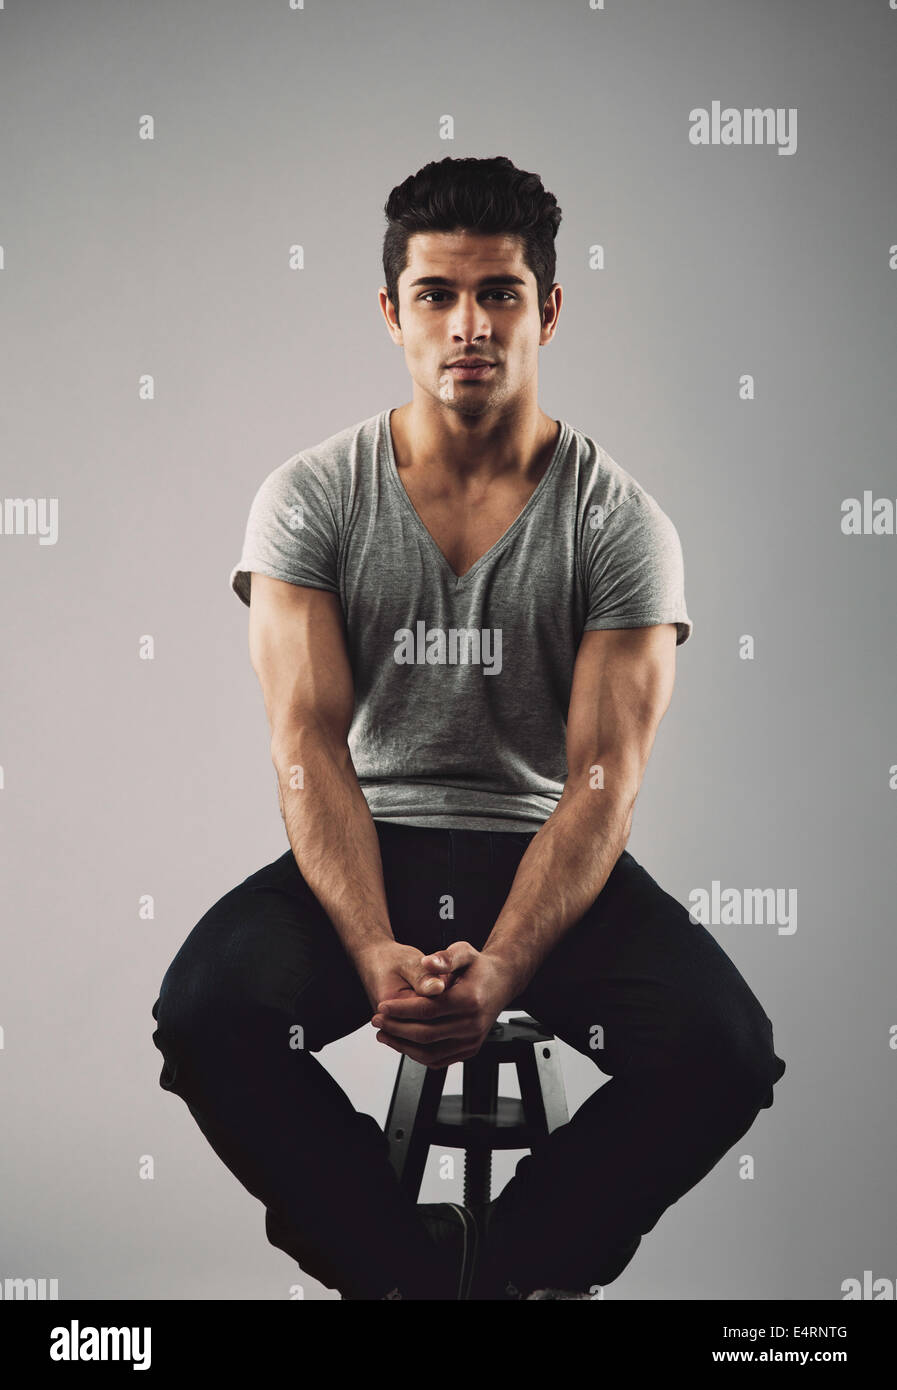 Porträt von muskulösen jungen männlichen Models auf Hocker sitzend. Hispanische Jüngling auf grauem Hintergrund. Stockfoto